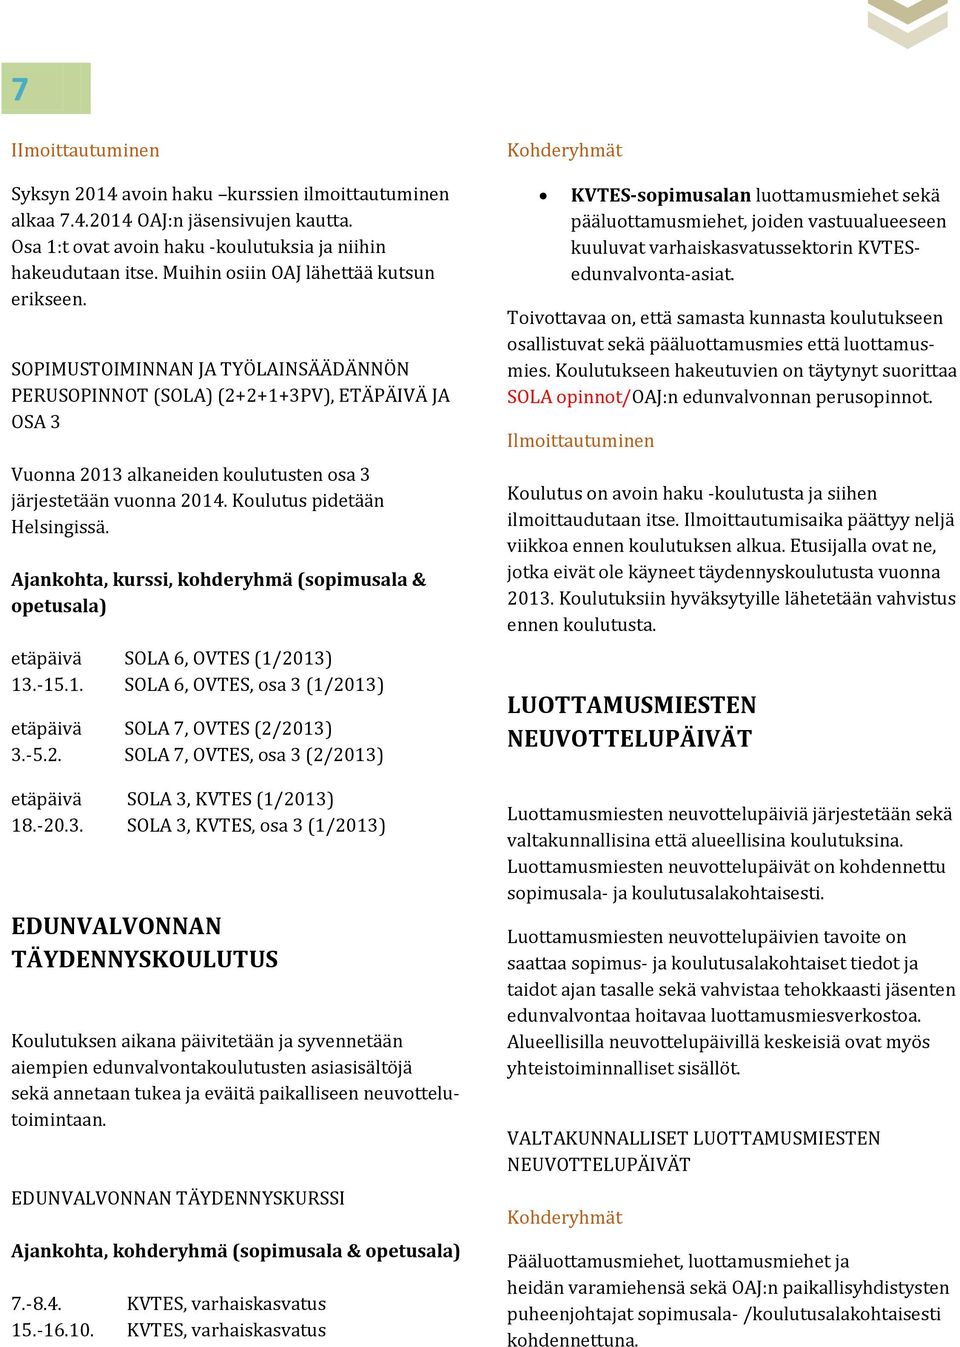 Koulutus pidetään Helsingissä. Ajankohta, kurssi, kohderyhmä (sopimusala & opetusala) etäpäivä SOLA 6, OVTES (1/2013) 13.-15.1. SOLA 6, OVTES, osa 3 (1/2013) etäpäivä SOLA 7, OVTES (2/2013) 3.-5.2. SOLA 7, OVTES, osa 3 (2/2013) etäpäivä SOLA 3, KVTES (1/2013) 18.